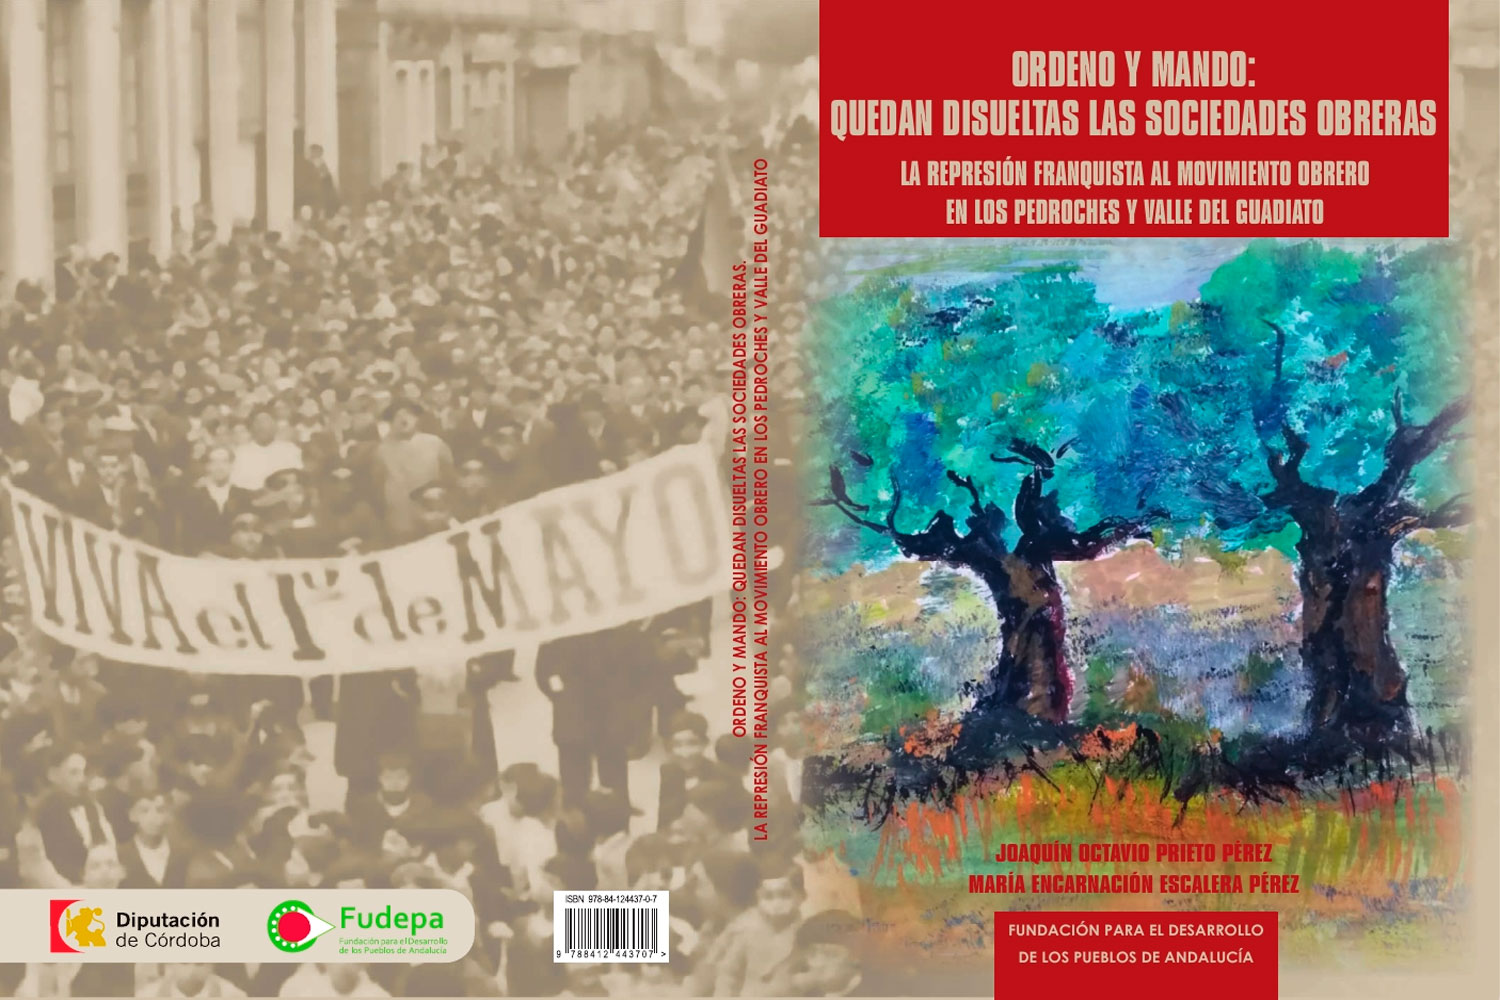 Se presenta el libro ‘Ordeno y mando: quedan disueltas las sociedades obreras’ en Diputación de Córdoba